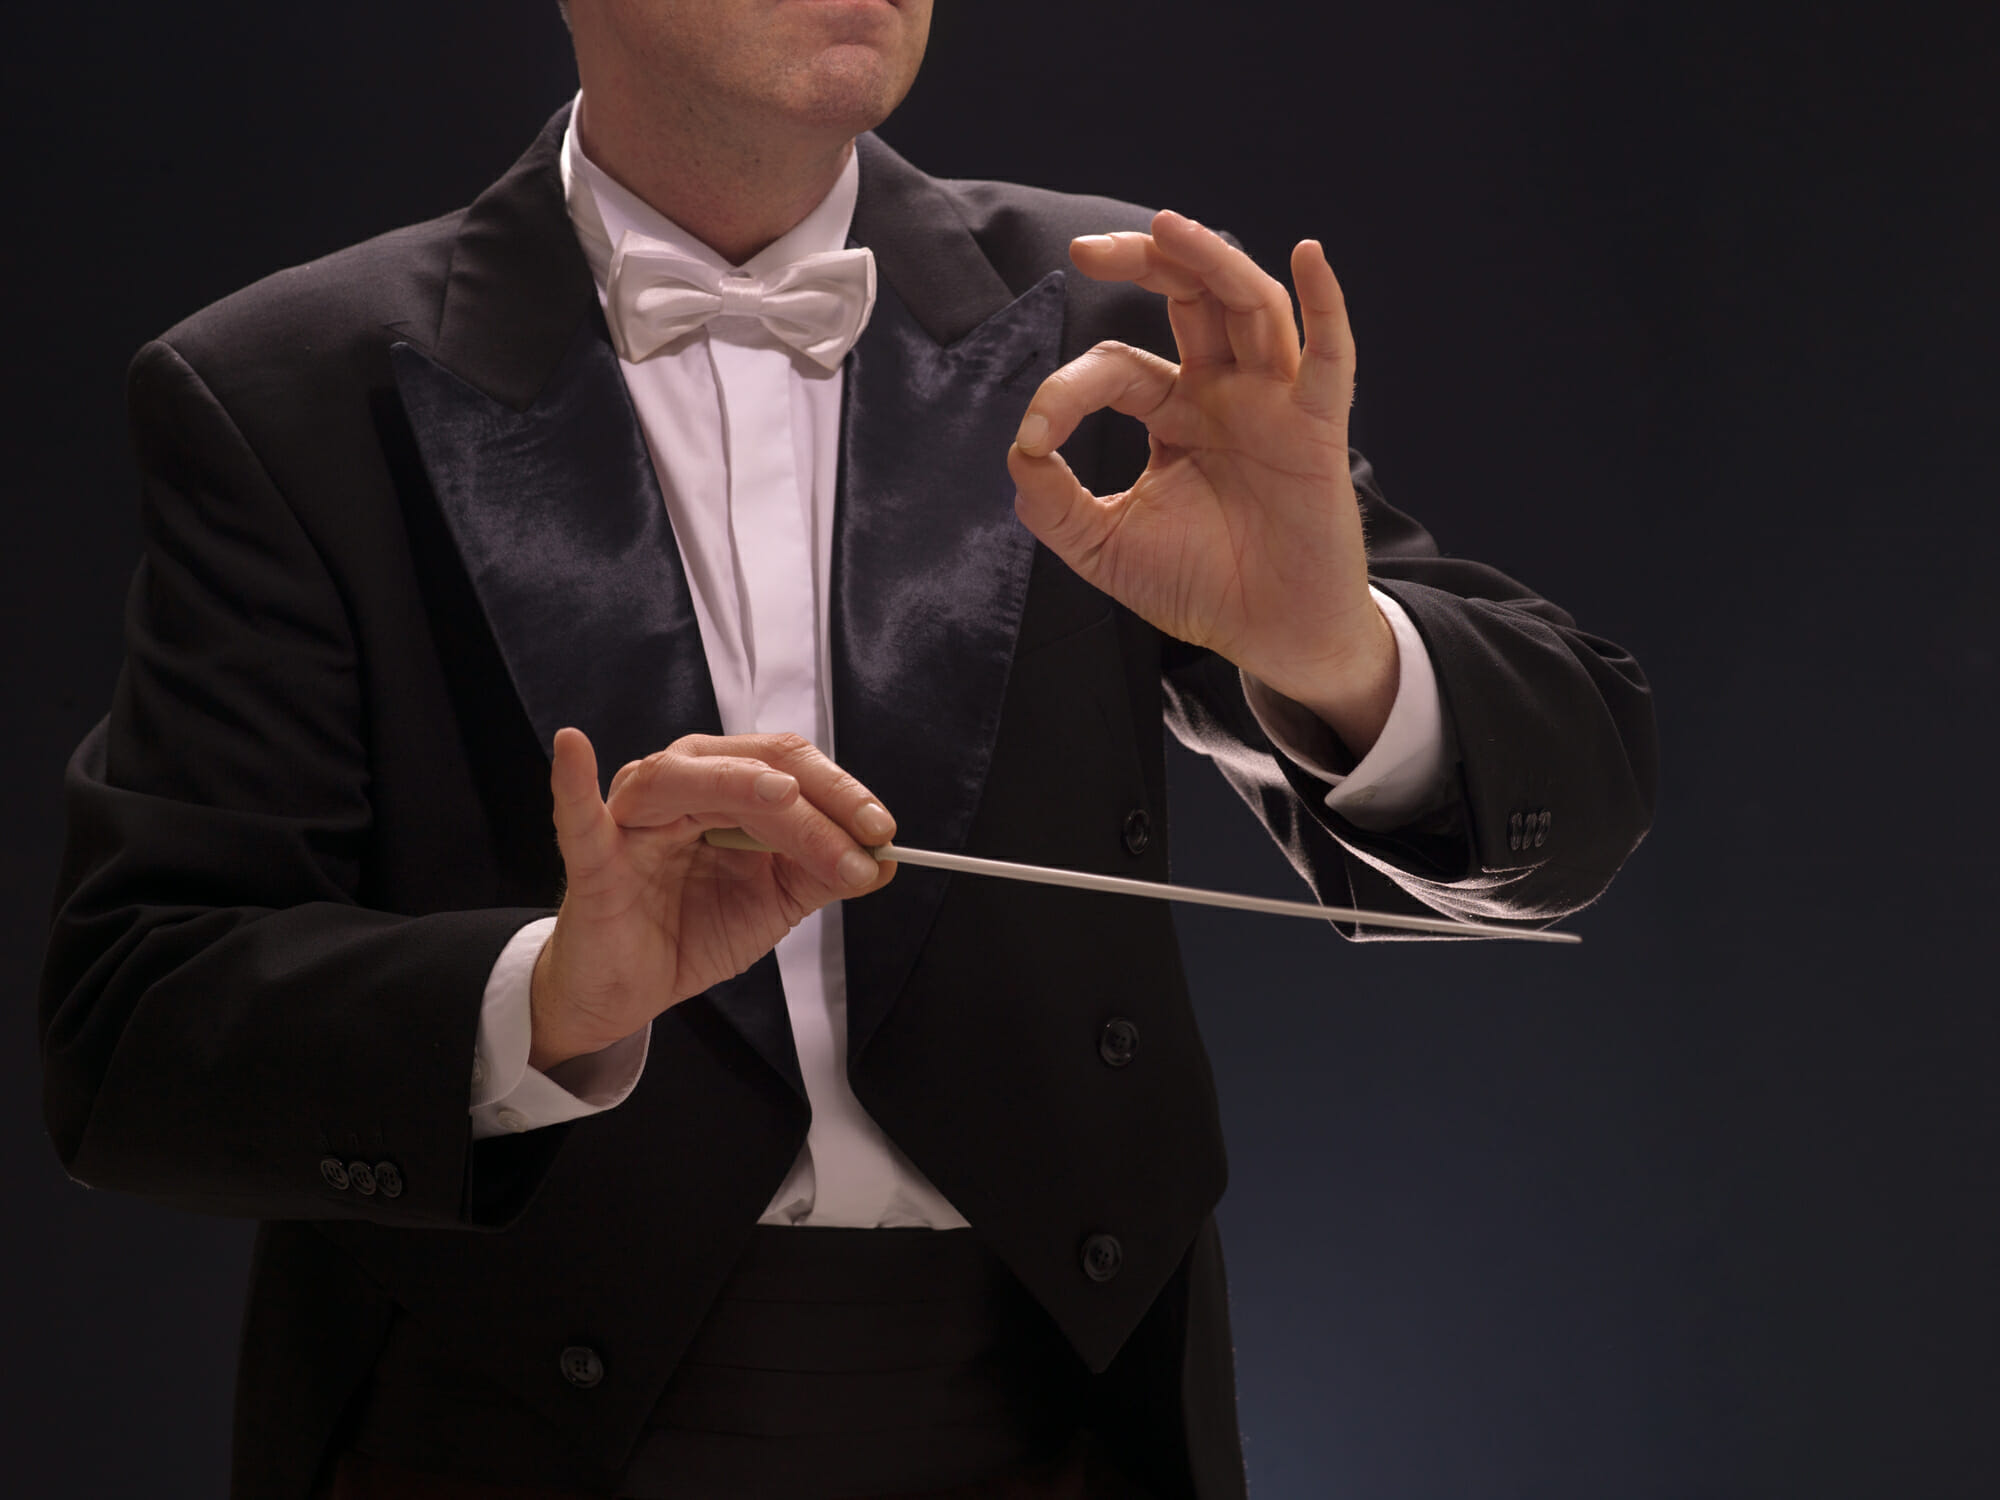 オーケストラの指揮者、登場ルートは2つある？観客が知らない奏者のプロの技の画像1